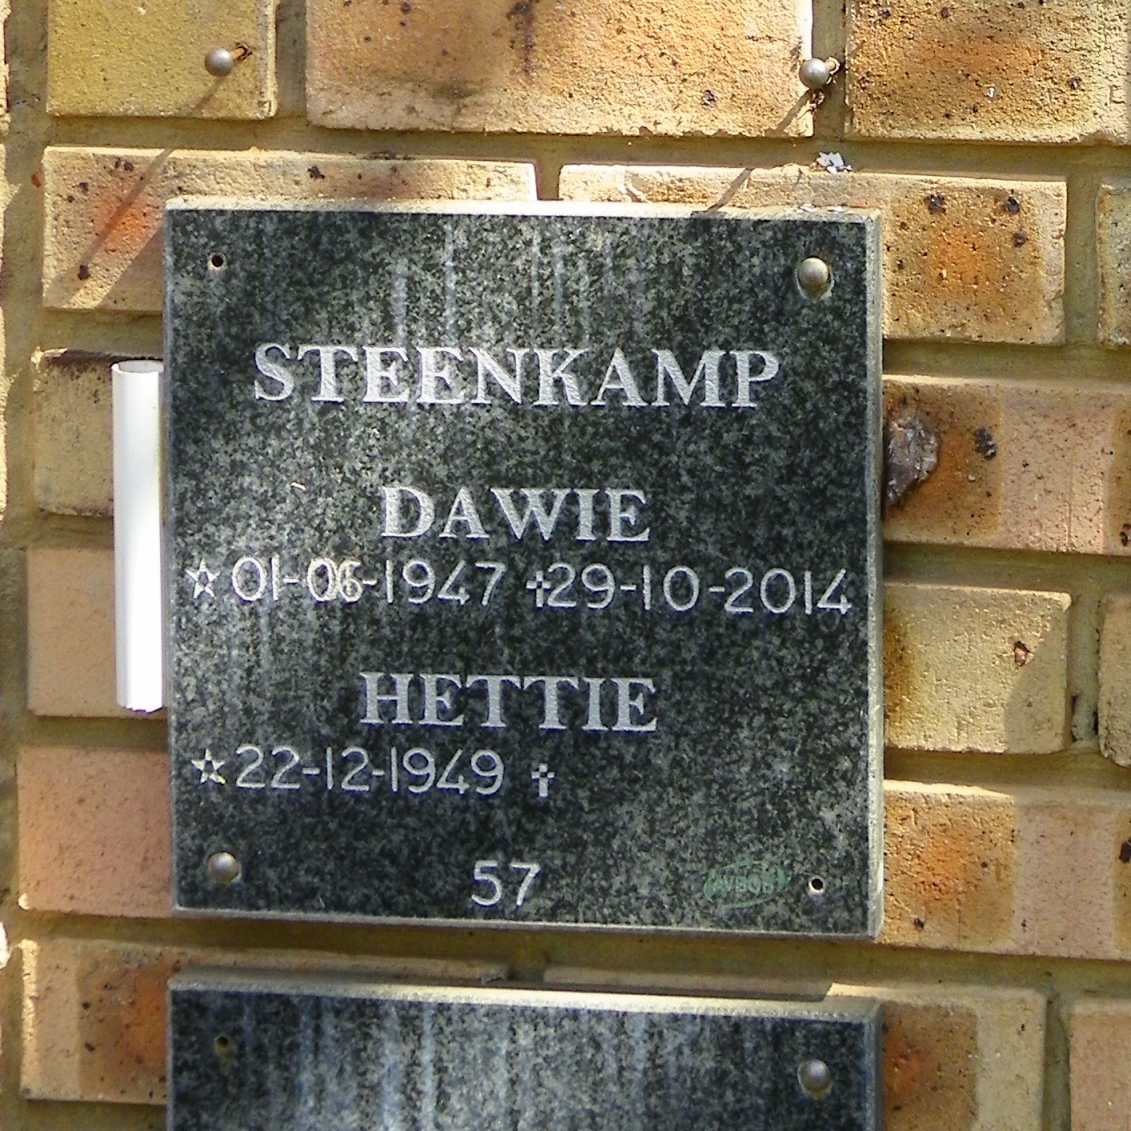 STEENKAMP Dawie 1947-2014 & Hettie 1949-